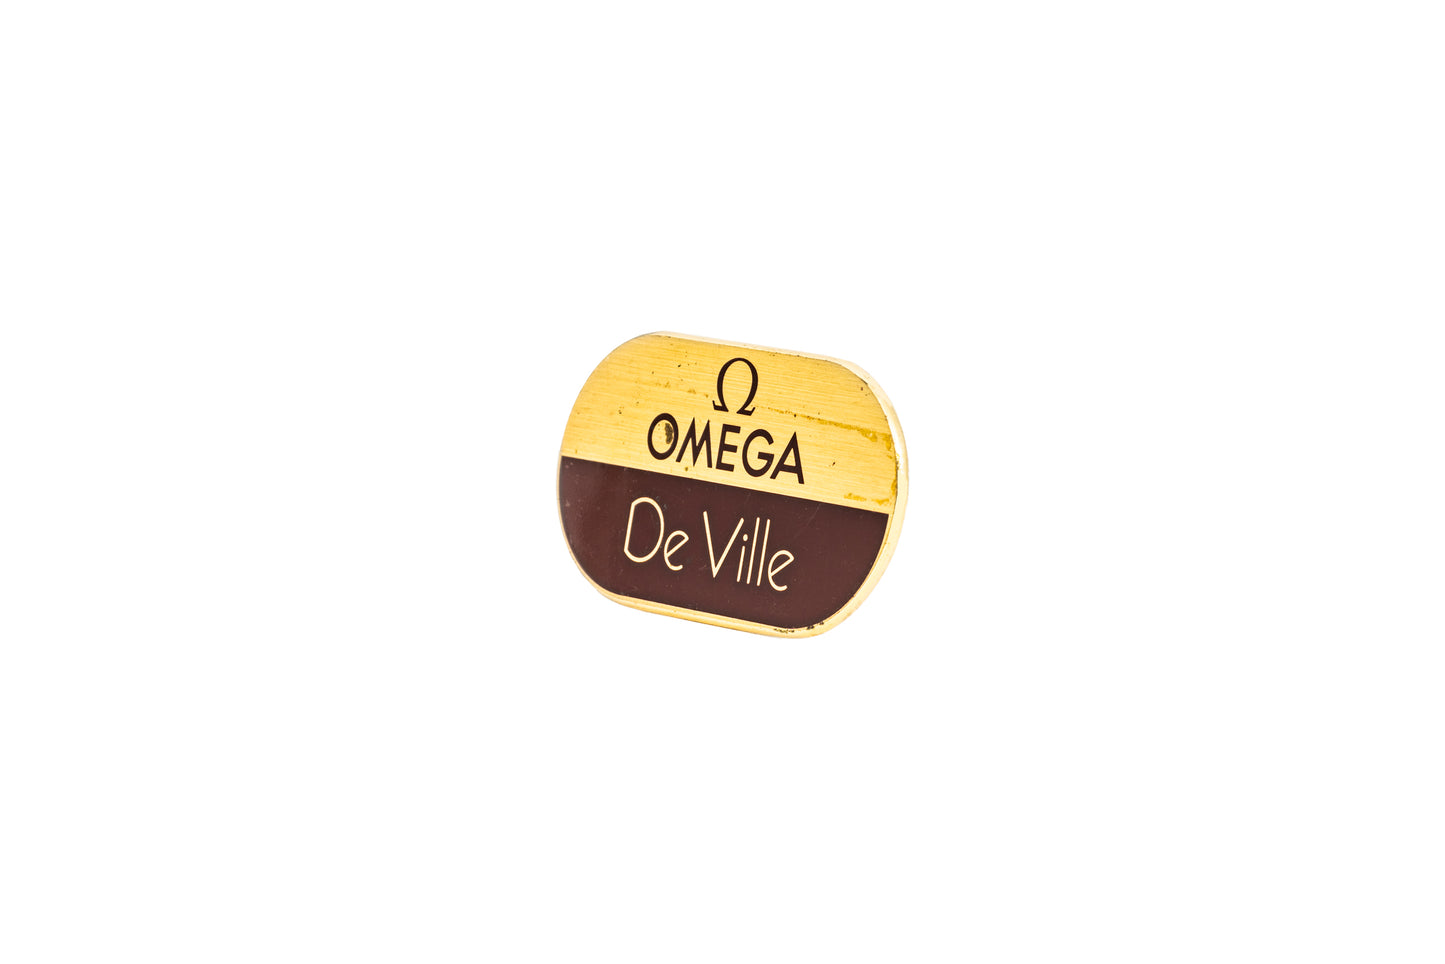 Omega De Ville Signage